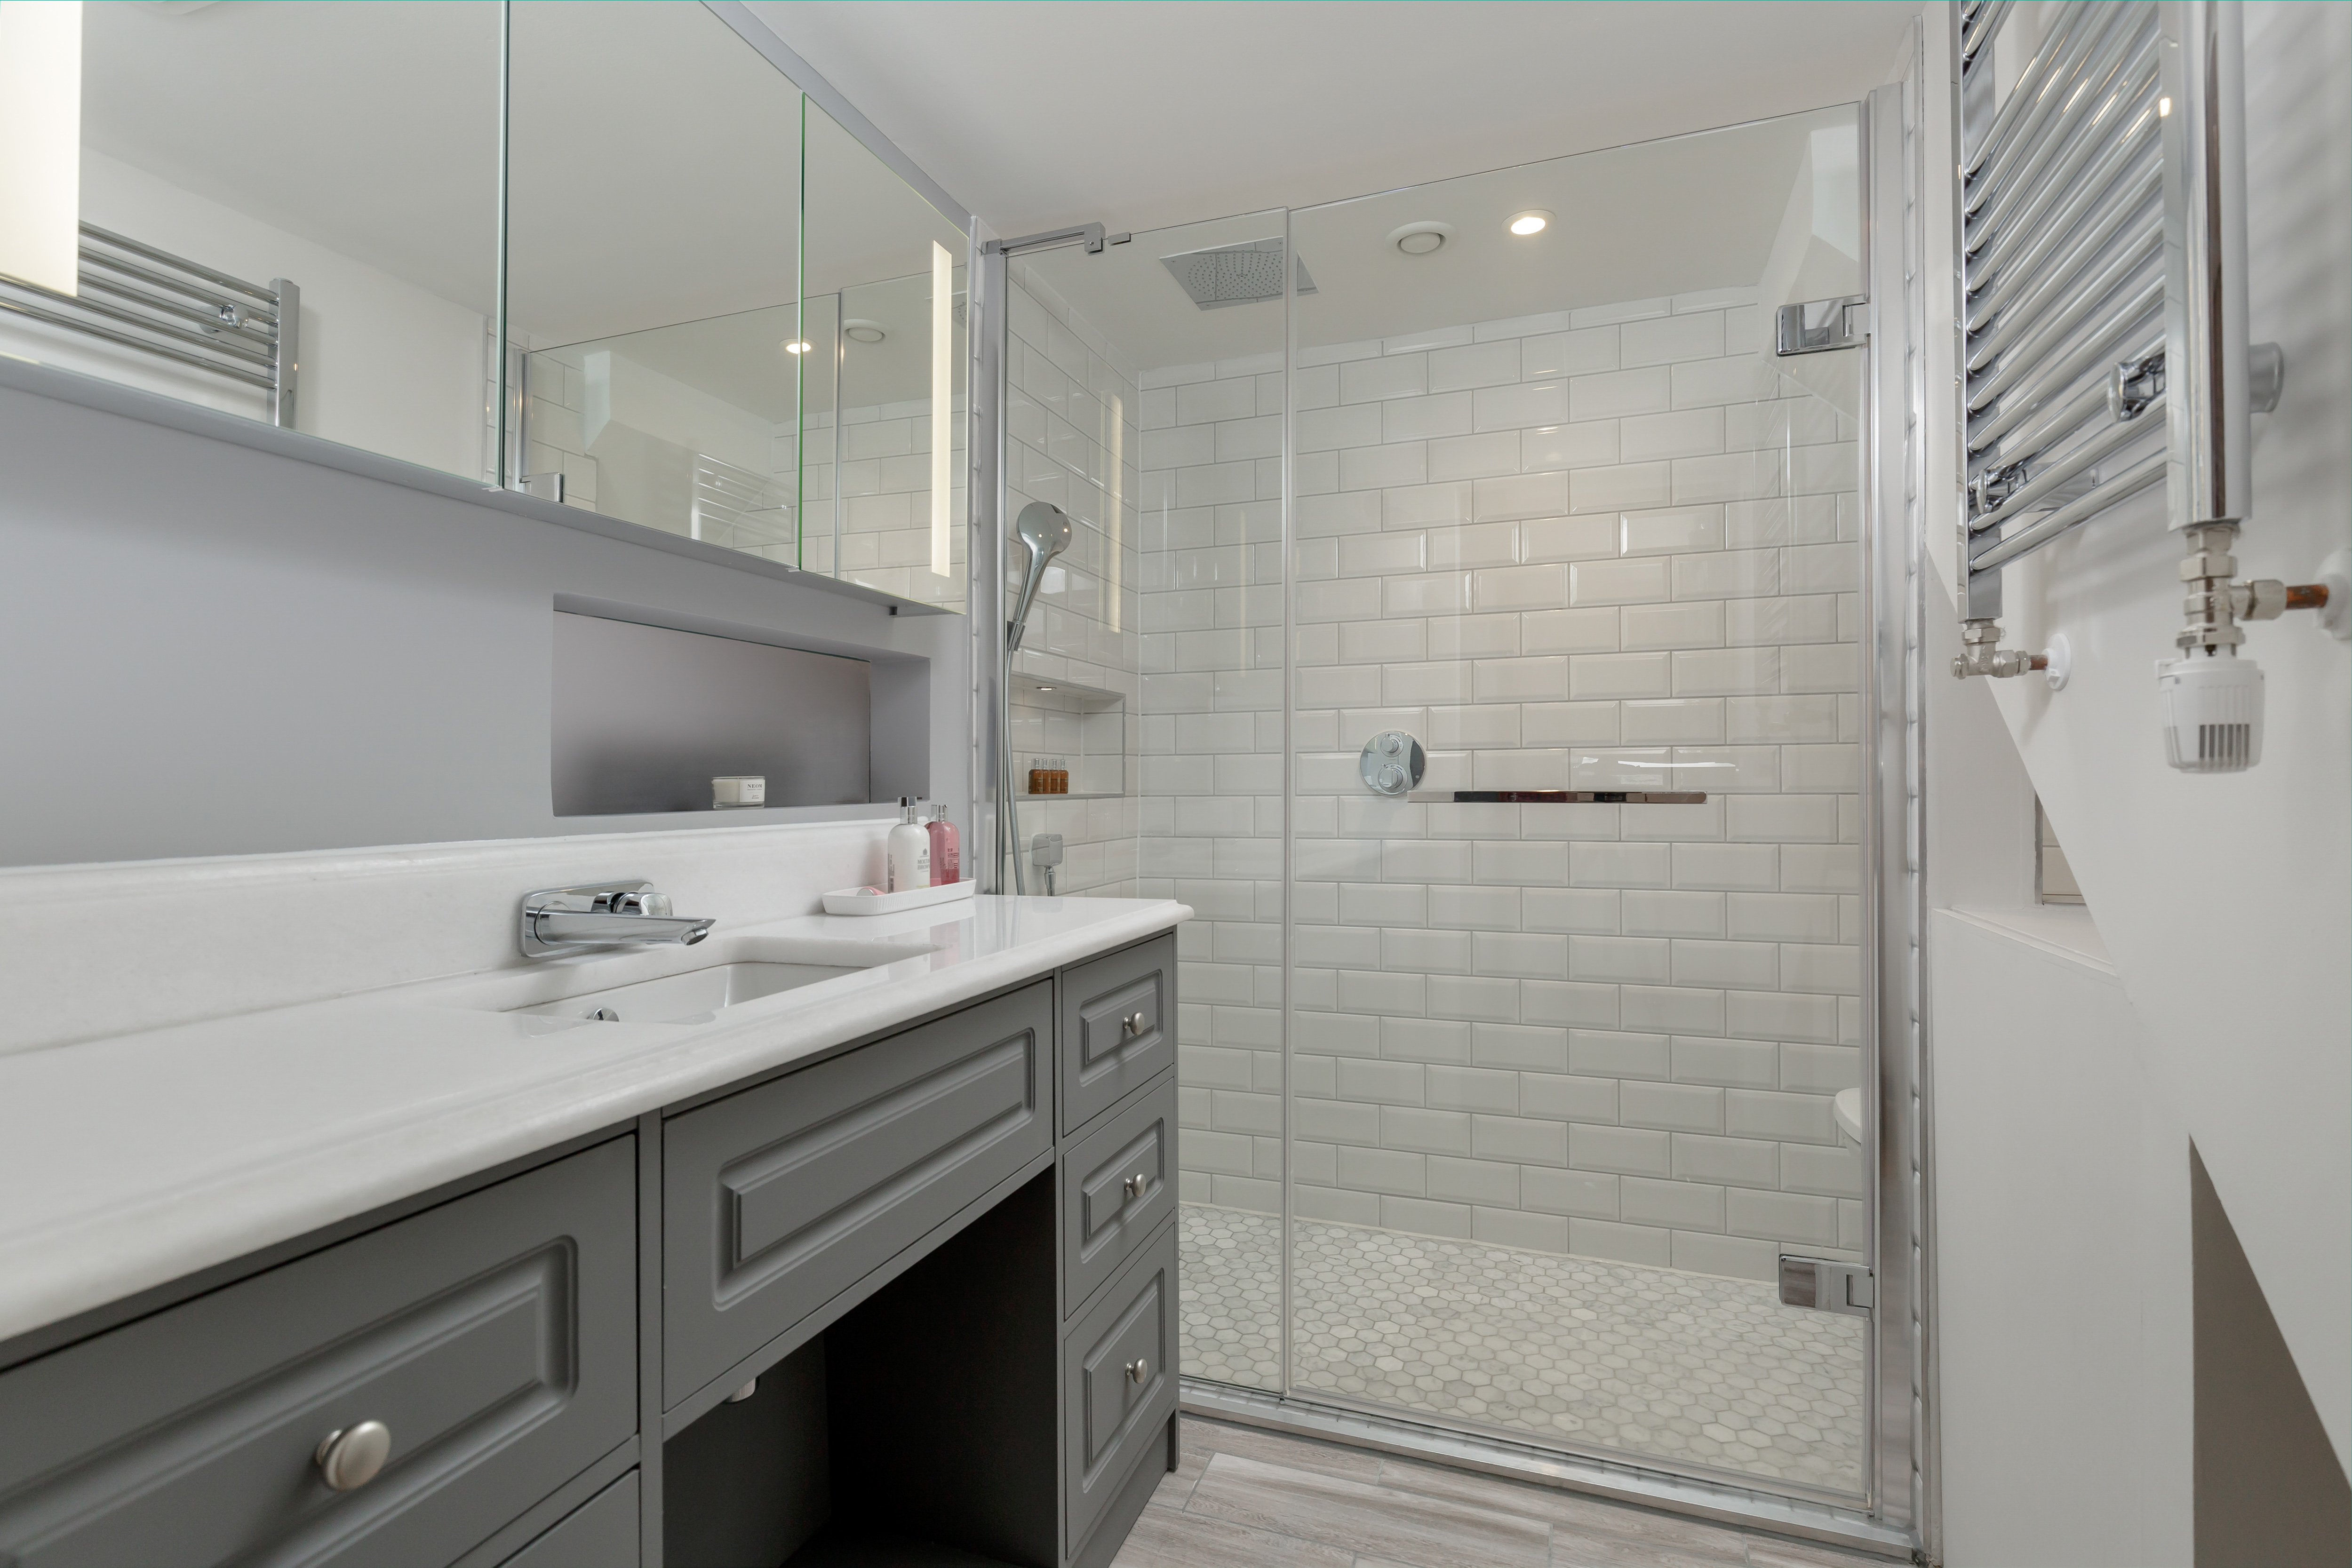 Kingsford Residence - Shower Room